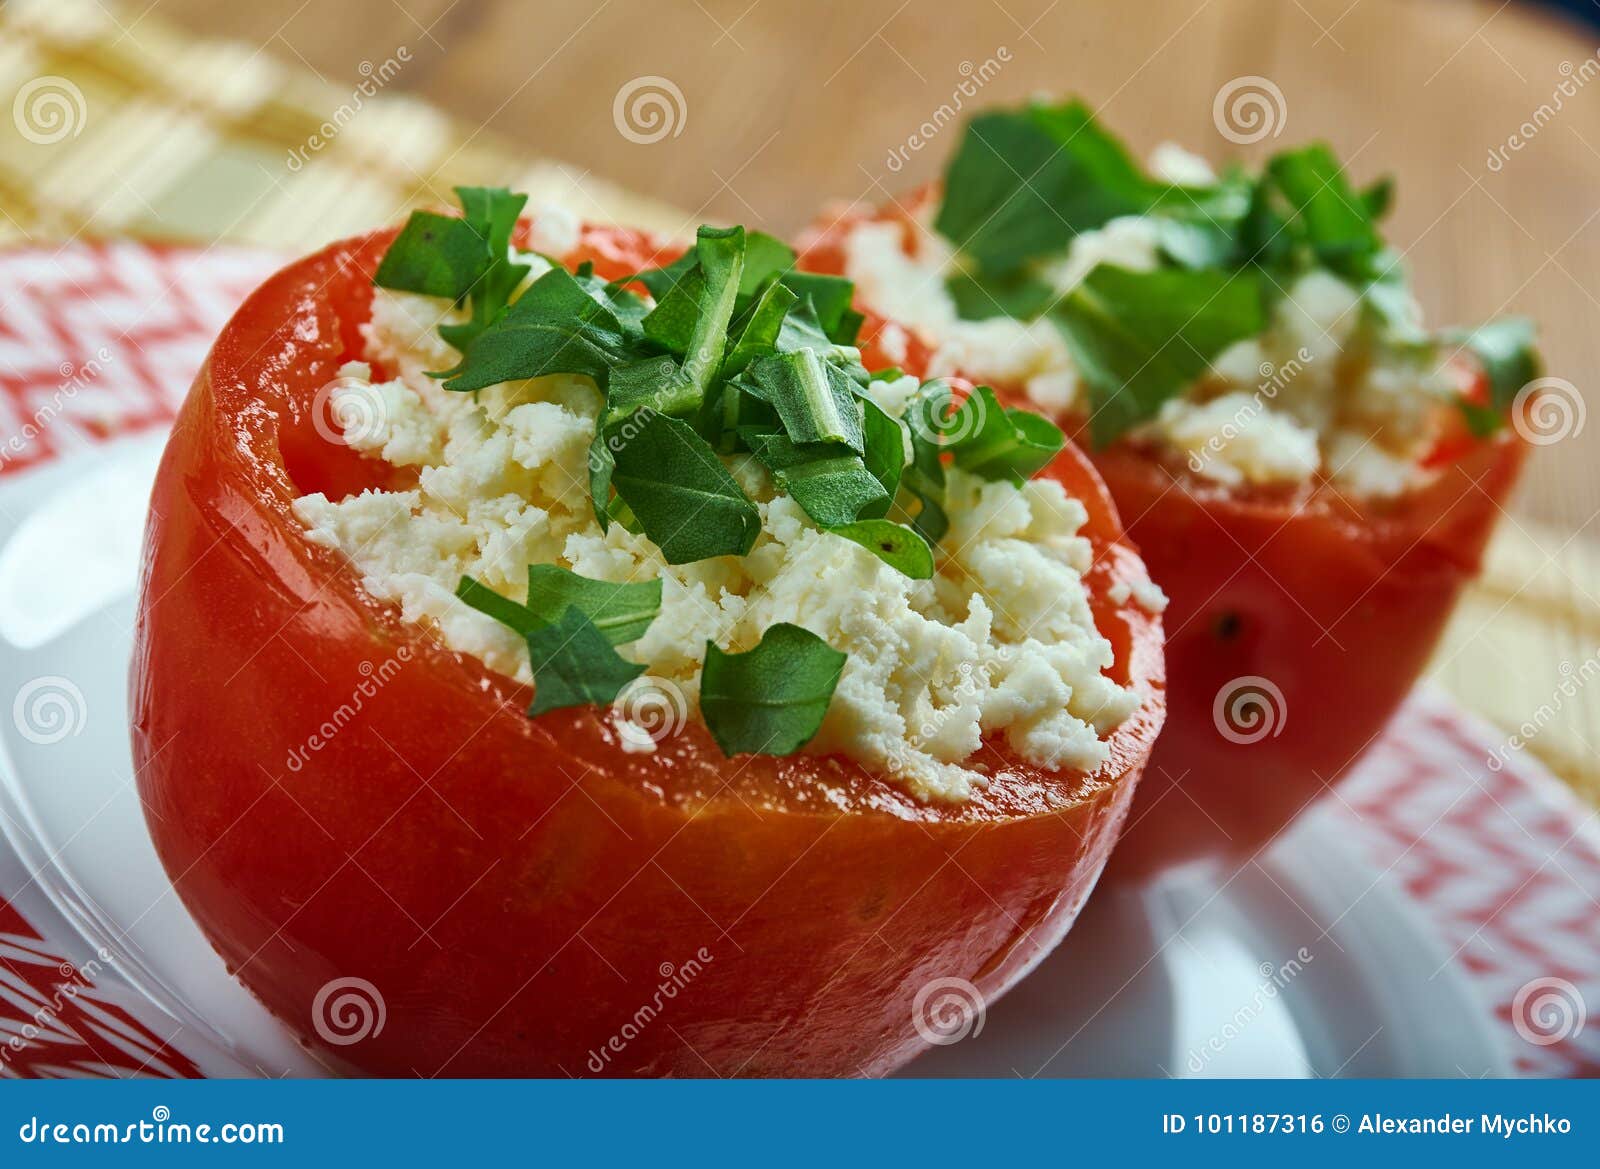 greek stuffed tomatoes